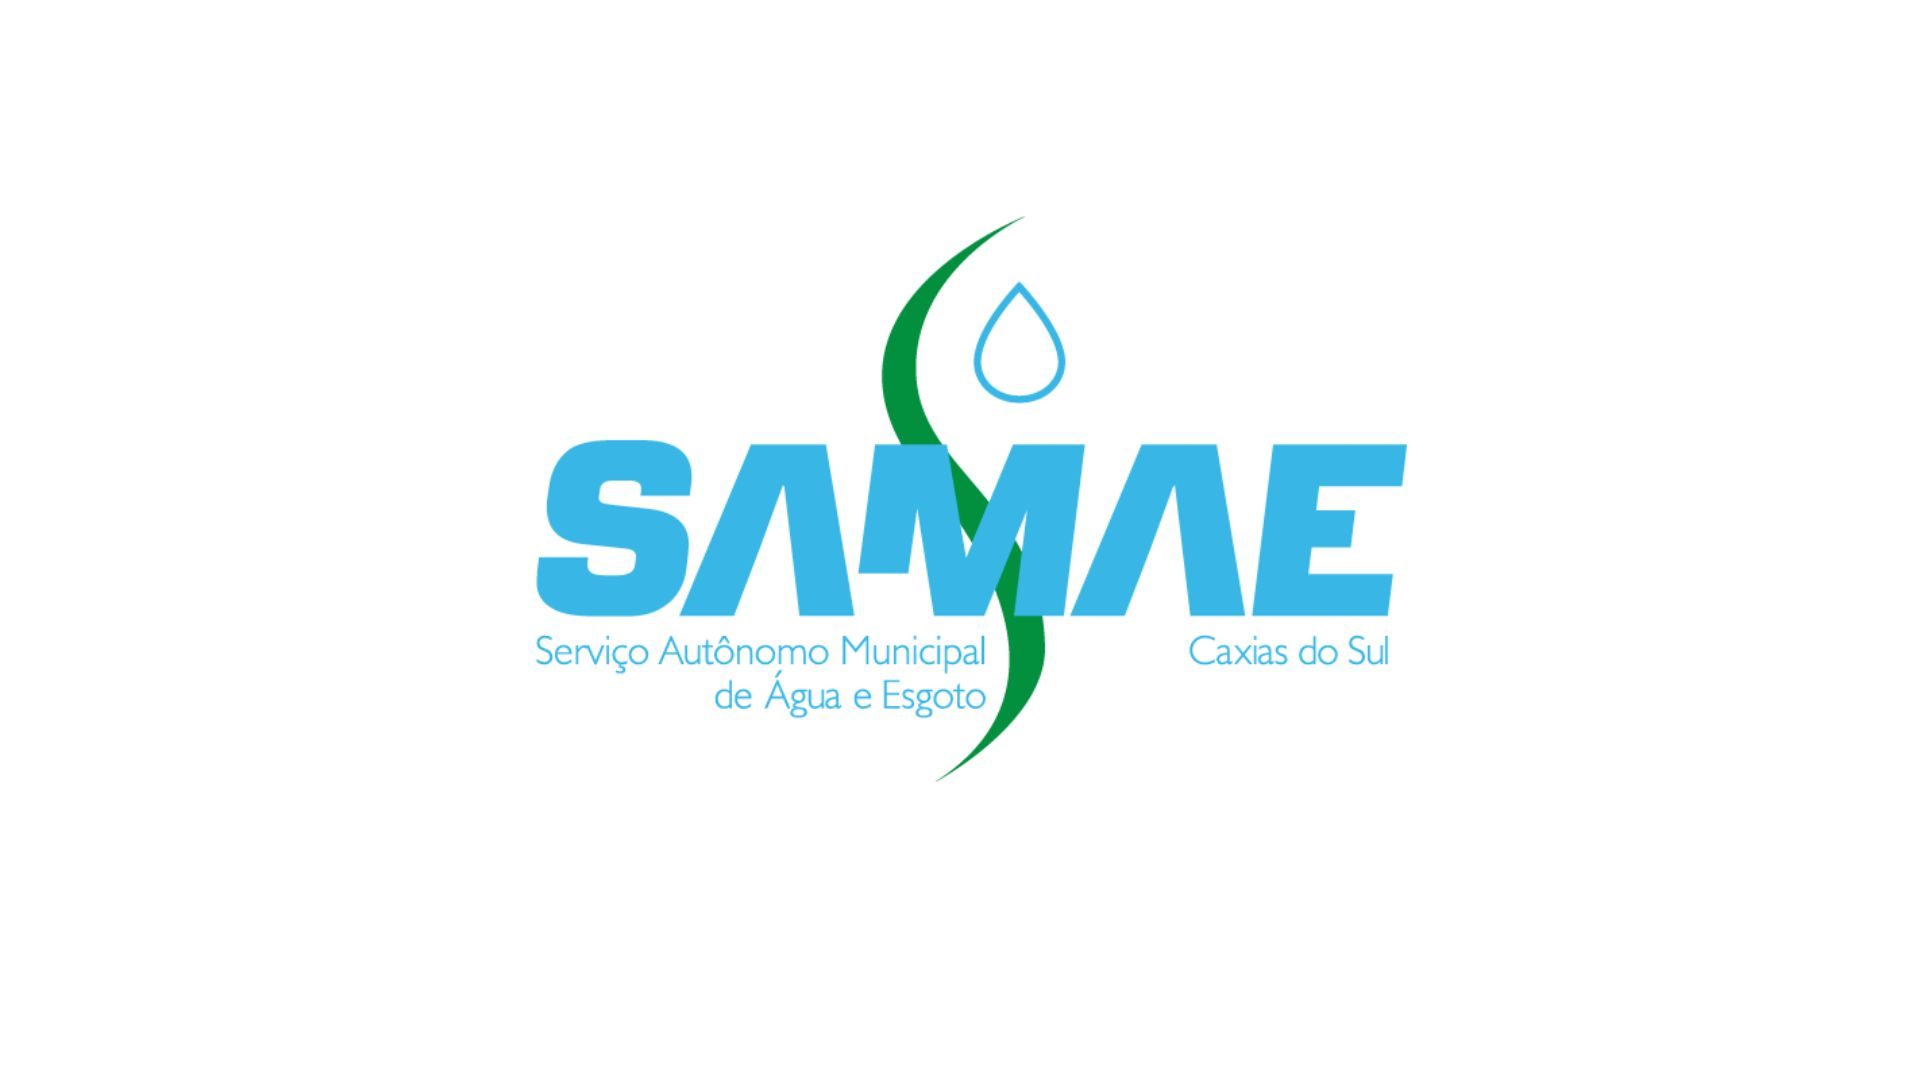 Samae